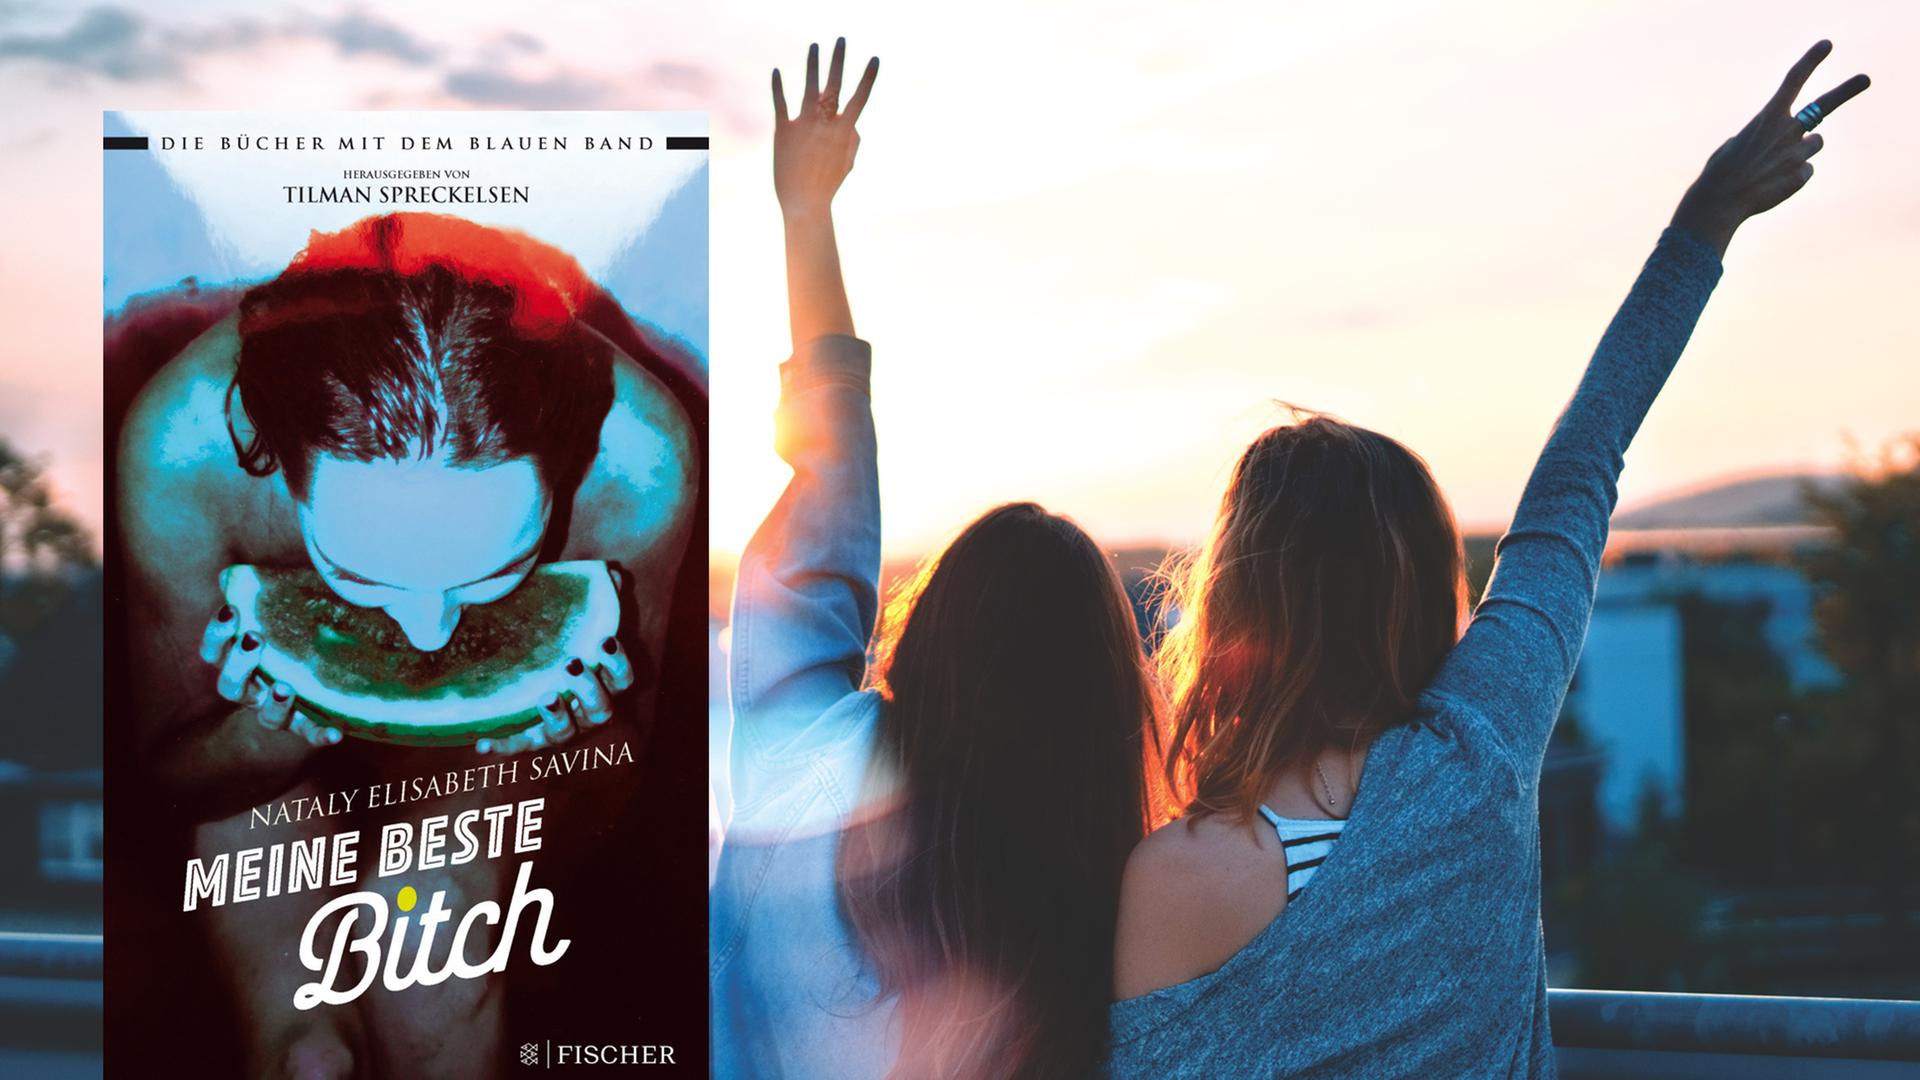 Cover von Nataly Elisabeth Savinas Jugendbuch "Meine beste Bitch". Im Hintergrund sind zwei junge Frauen zu sehen, die ihre Hände in den Himmel strecken.